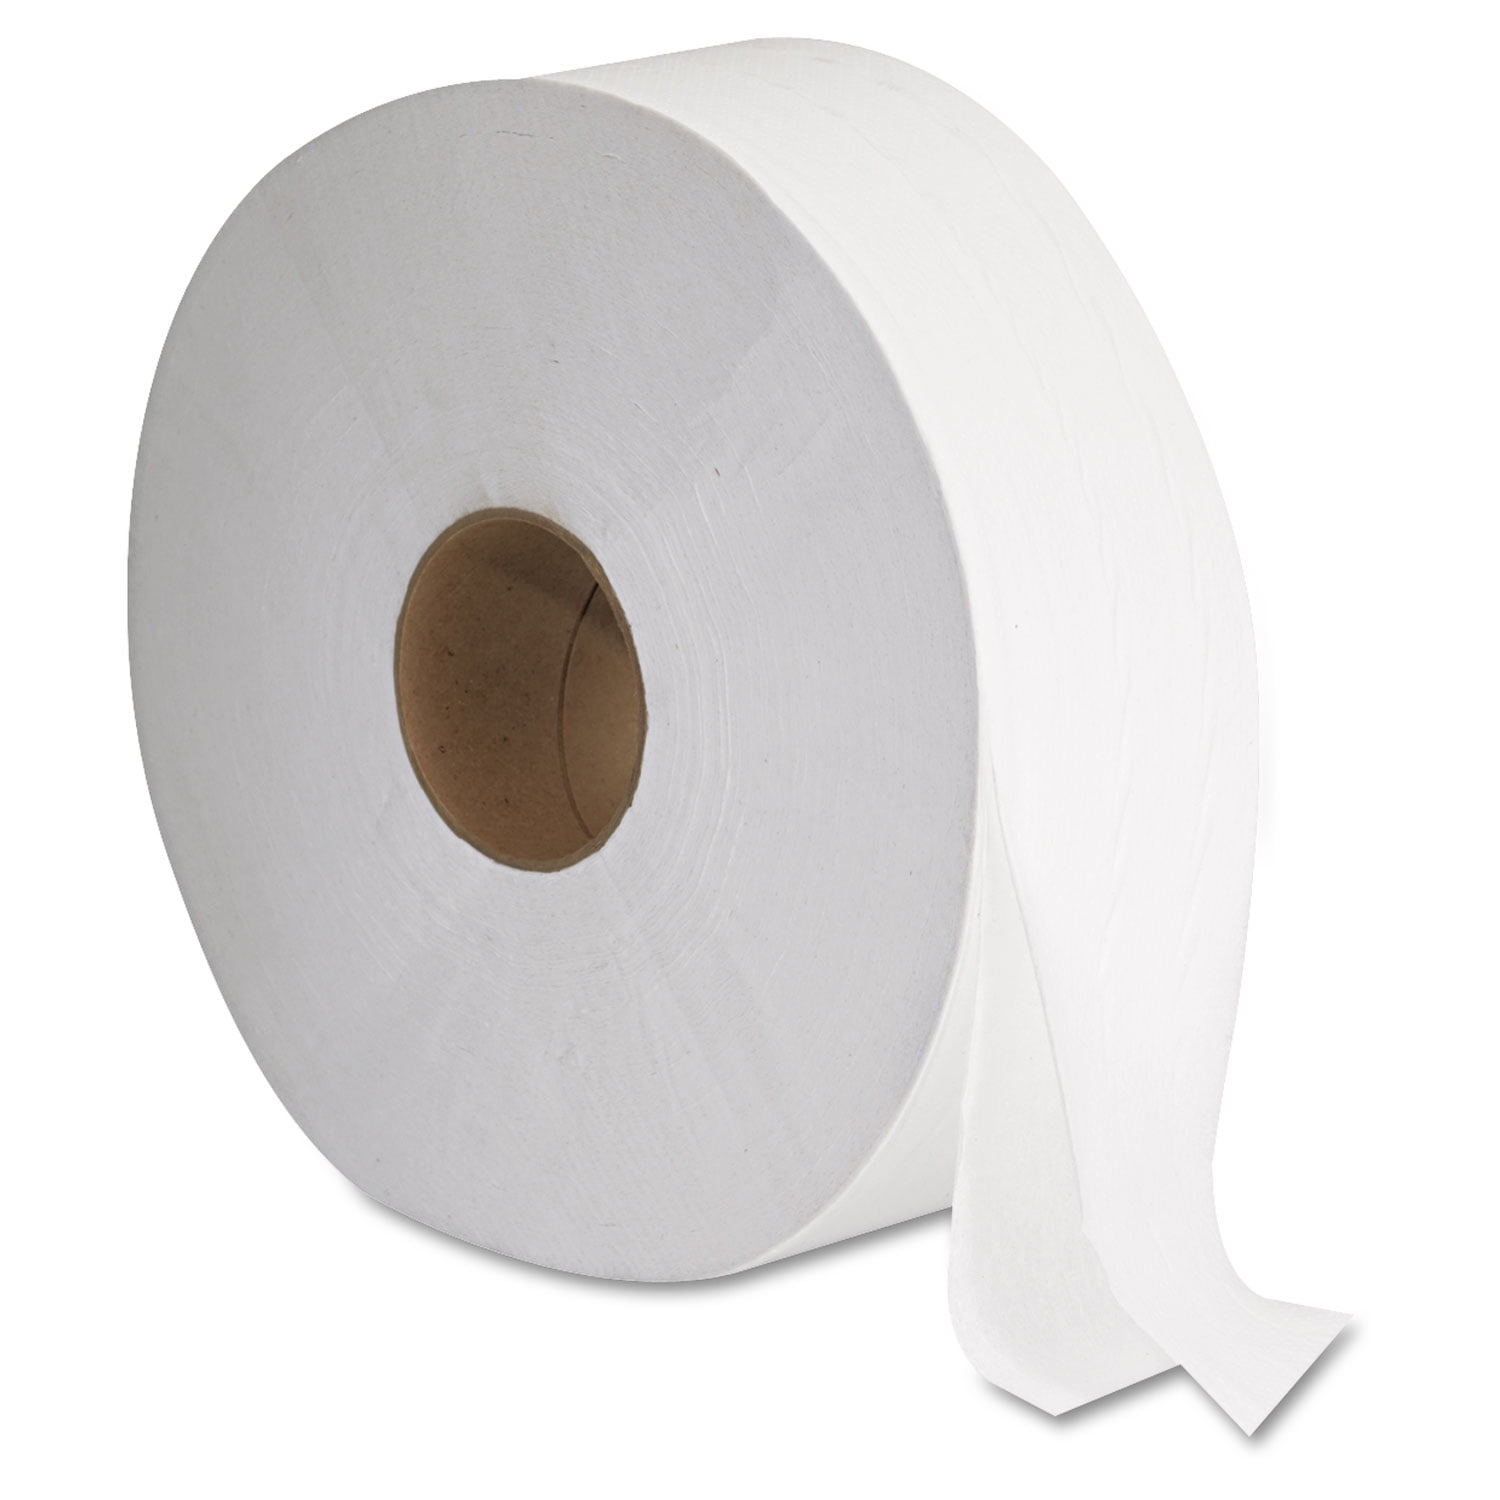 Standard Bathroom Tissue Rolls – www.